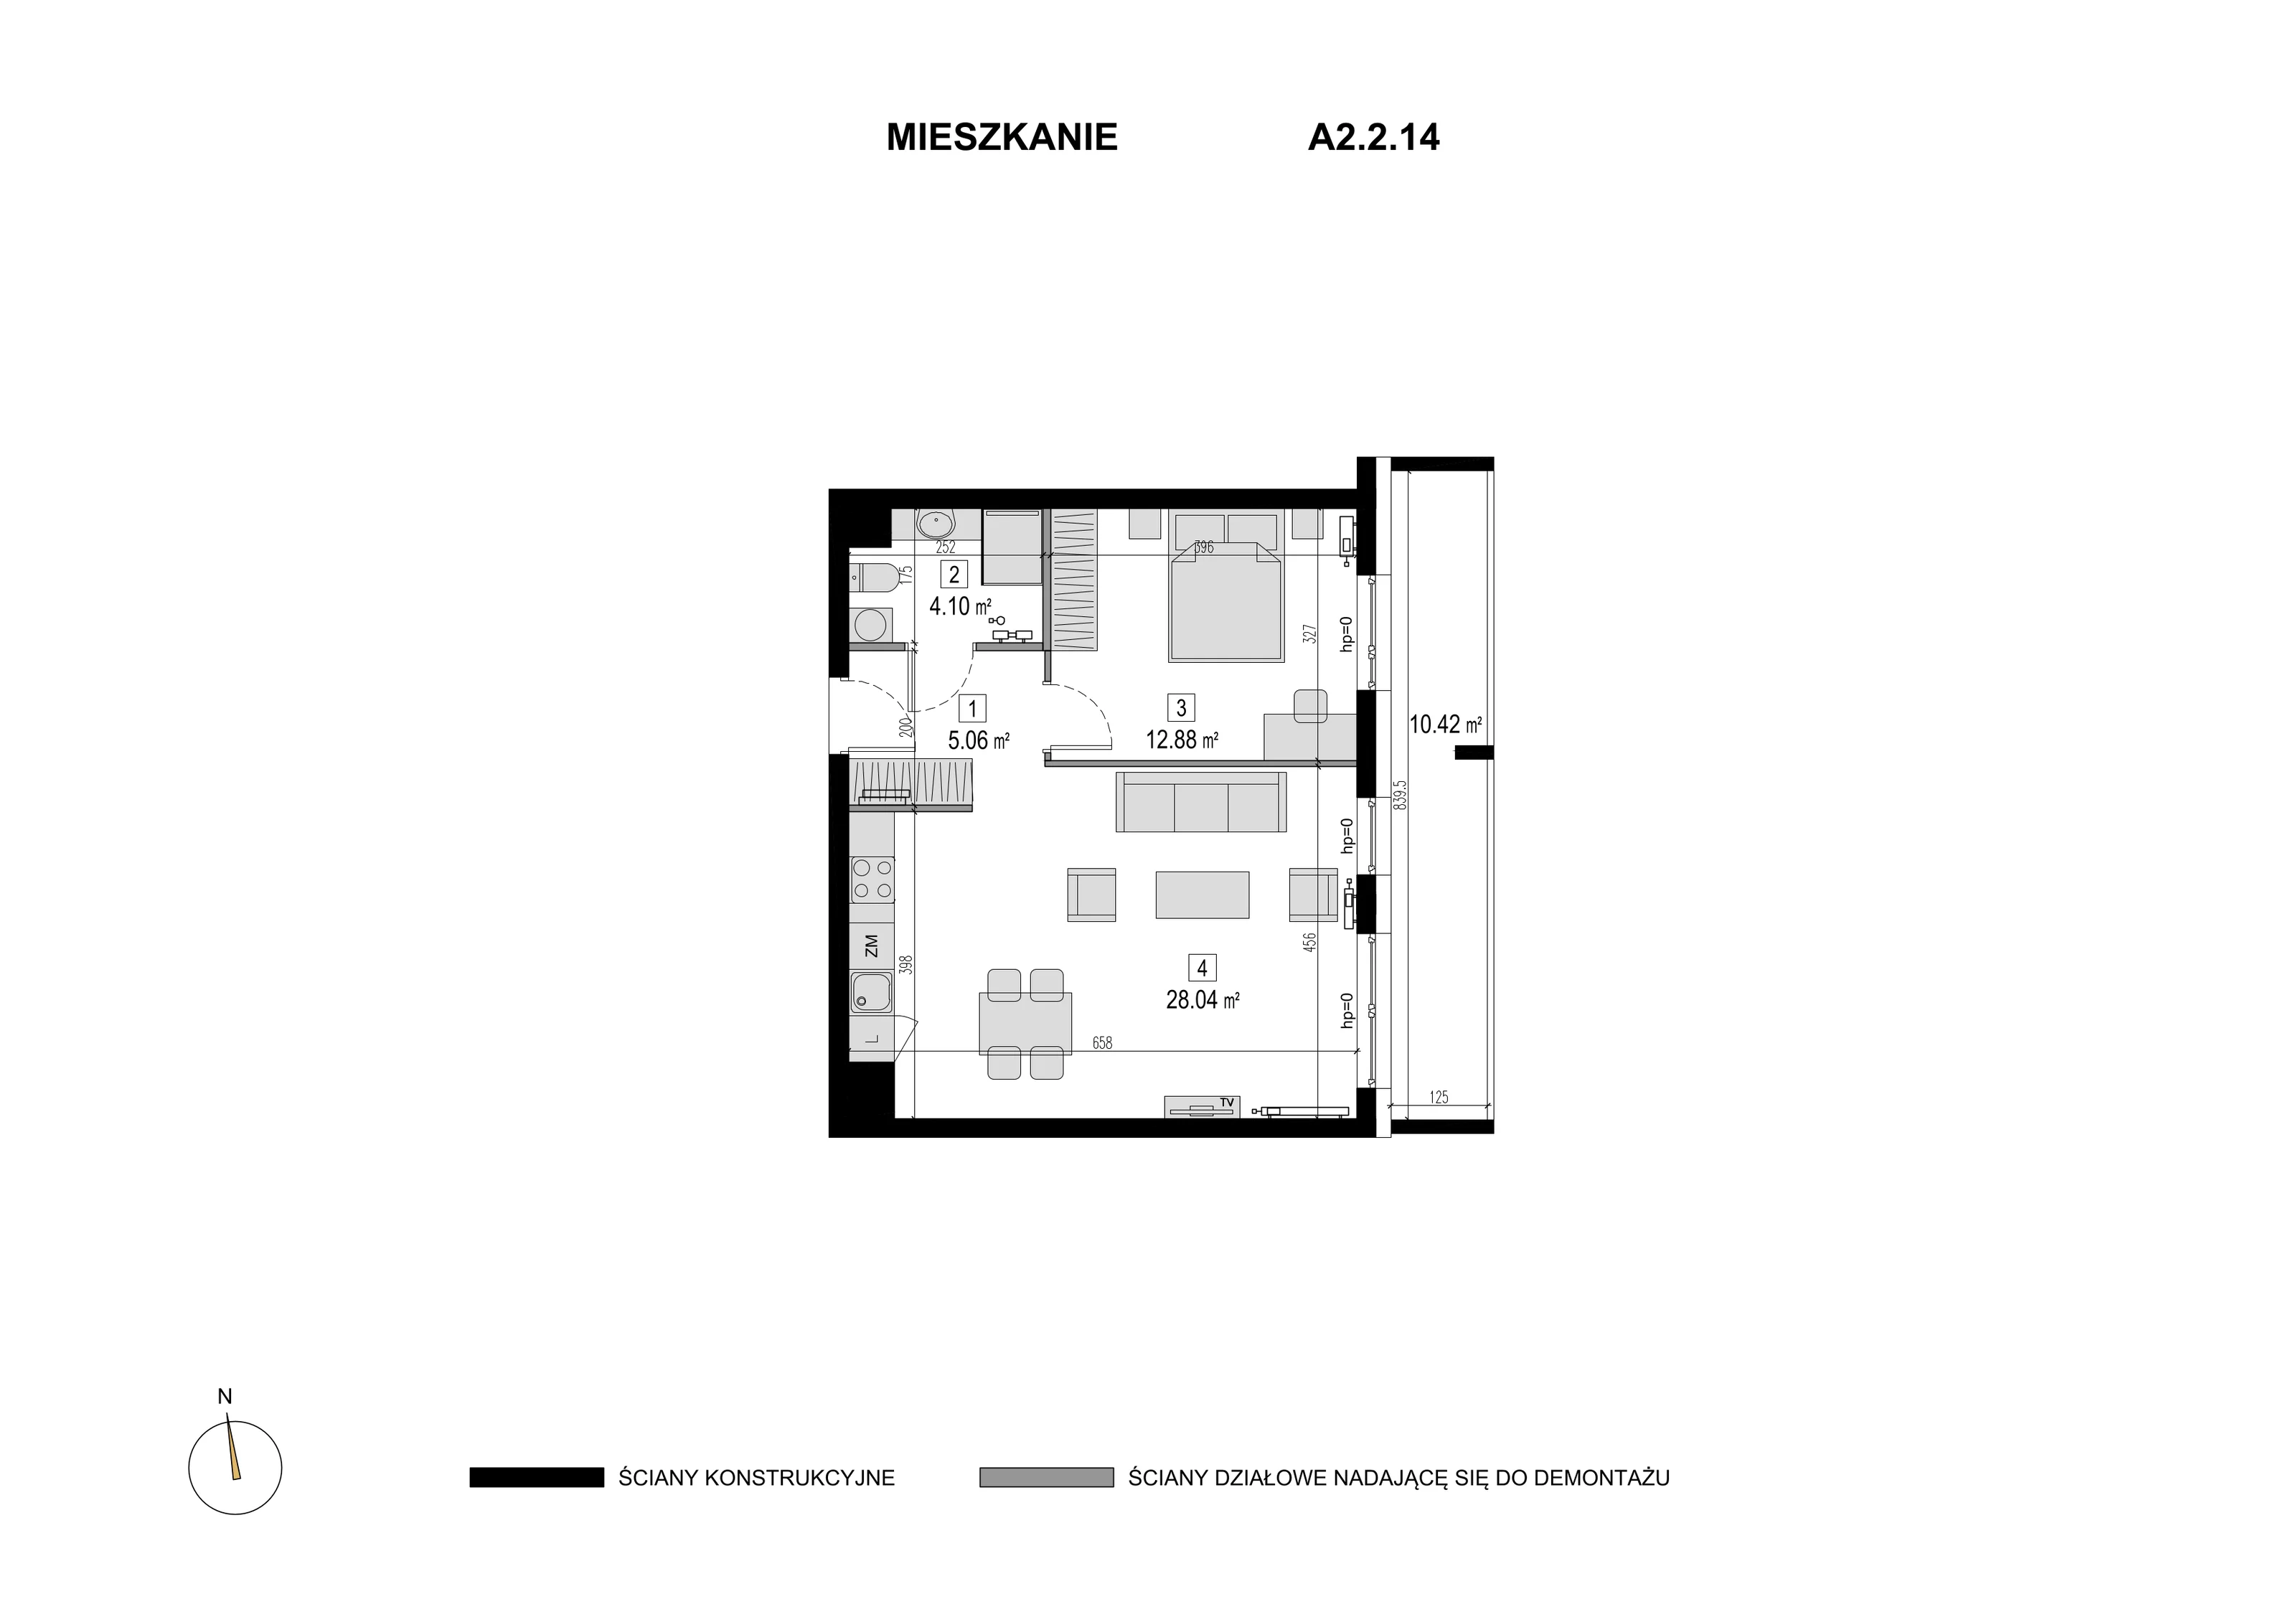 Mieszkanie 50,08 m², piętro 1, oferta nr A2.2.14, Novaforma, Legnica, ul. Chojnowska